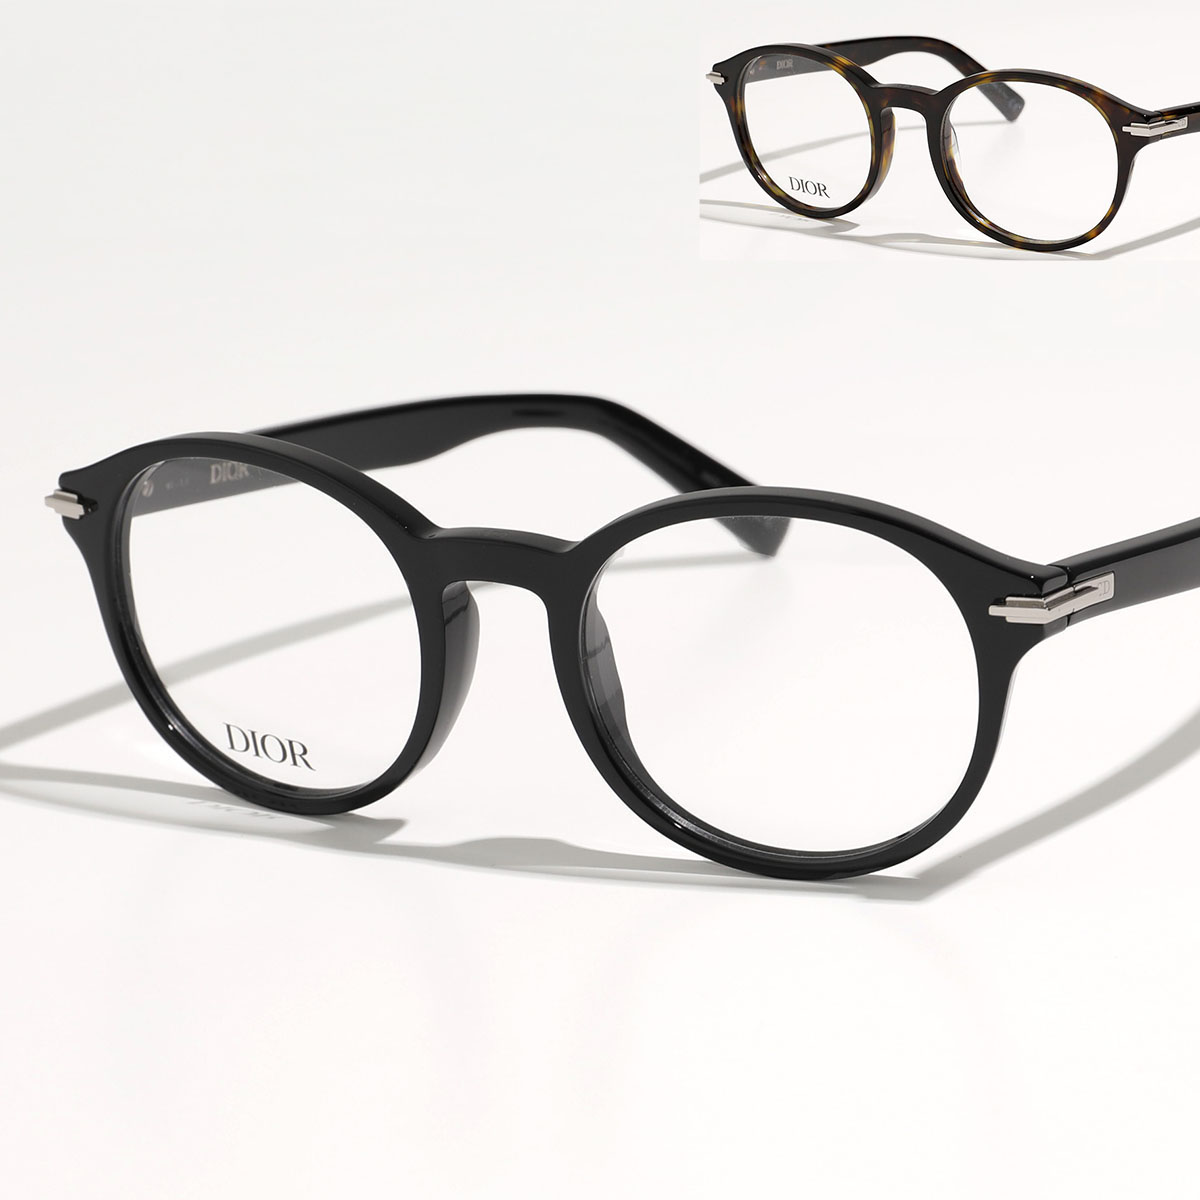 Dior ディオール メガネ BLACKSUITOO DM50009I メンズ ボストン型 めがね 伊達メガネ ダテ 眼鏡 アイウェア カラー2色 |  インポートセレクト musee